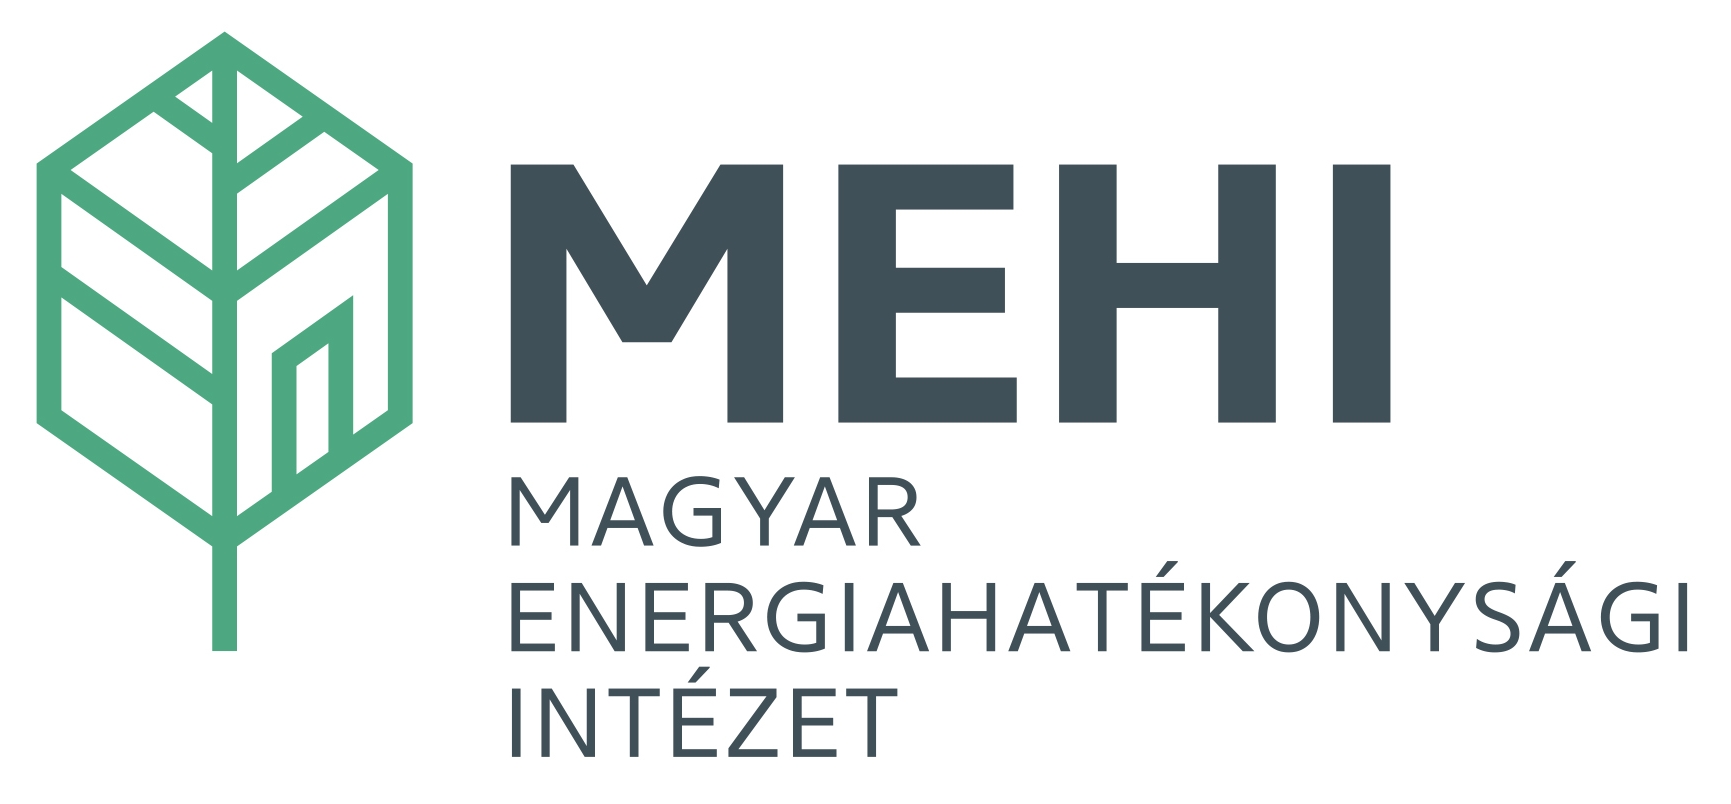 Magyar Energiahatékonysági Intézet (MEHI)